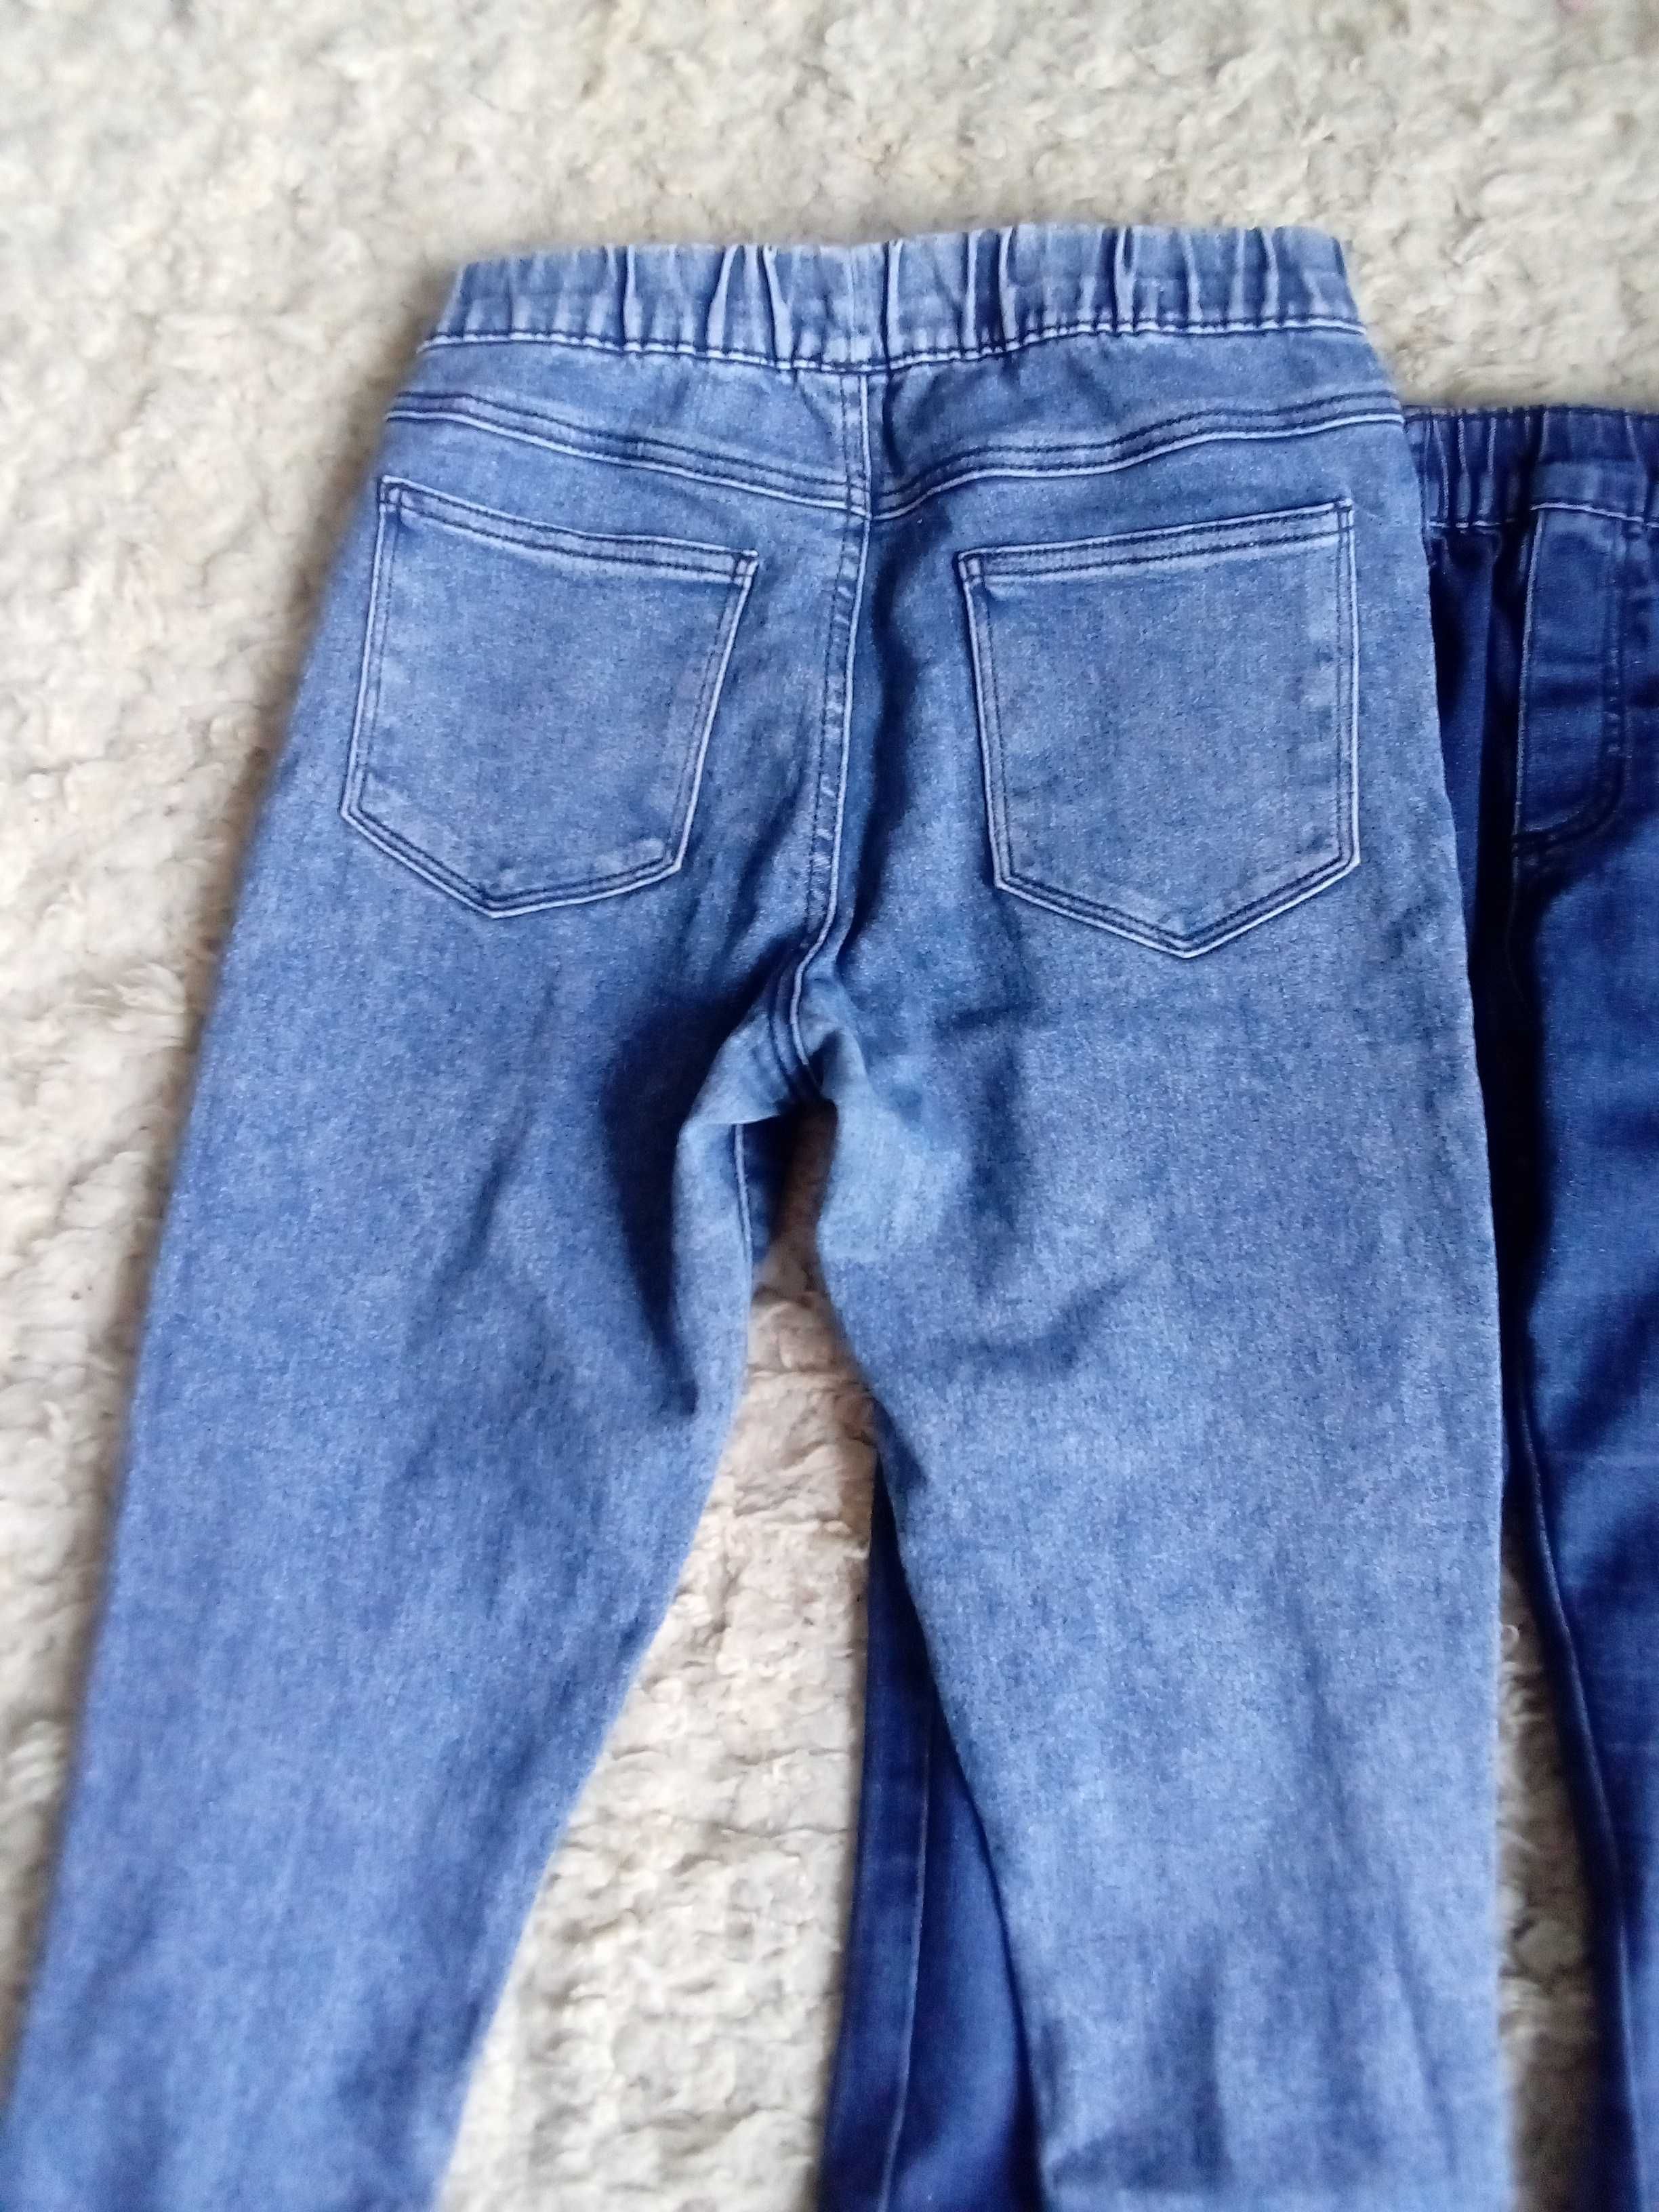 Zestaw ubrań bawełnianych spodni dziewczęcych damskich 164 S jeansy